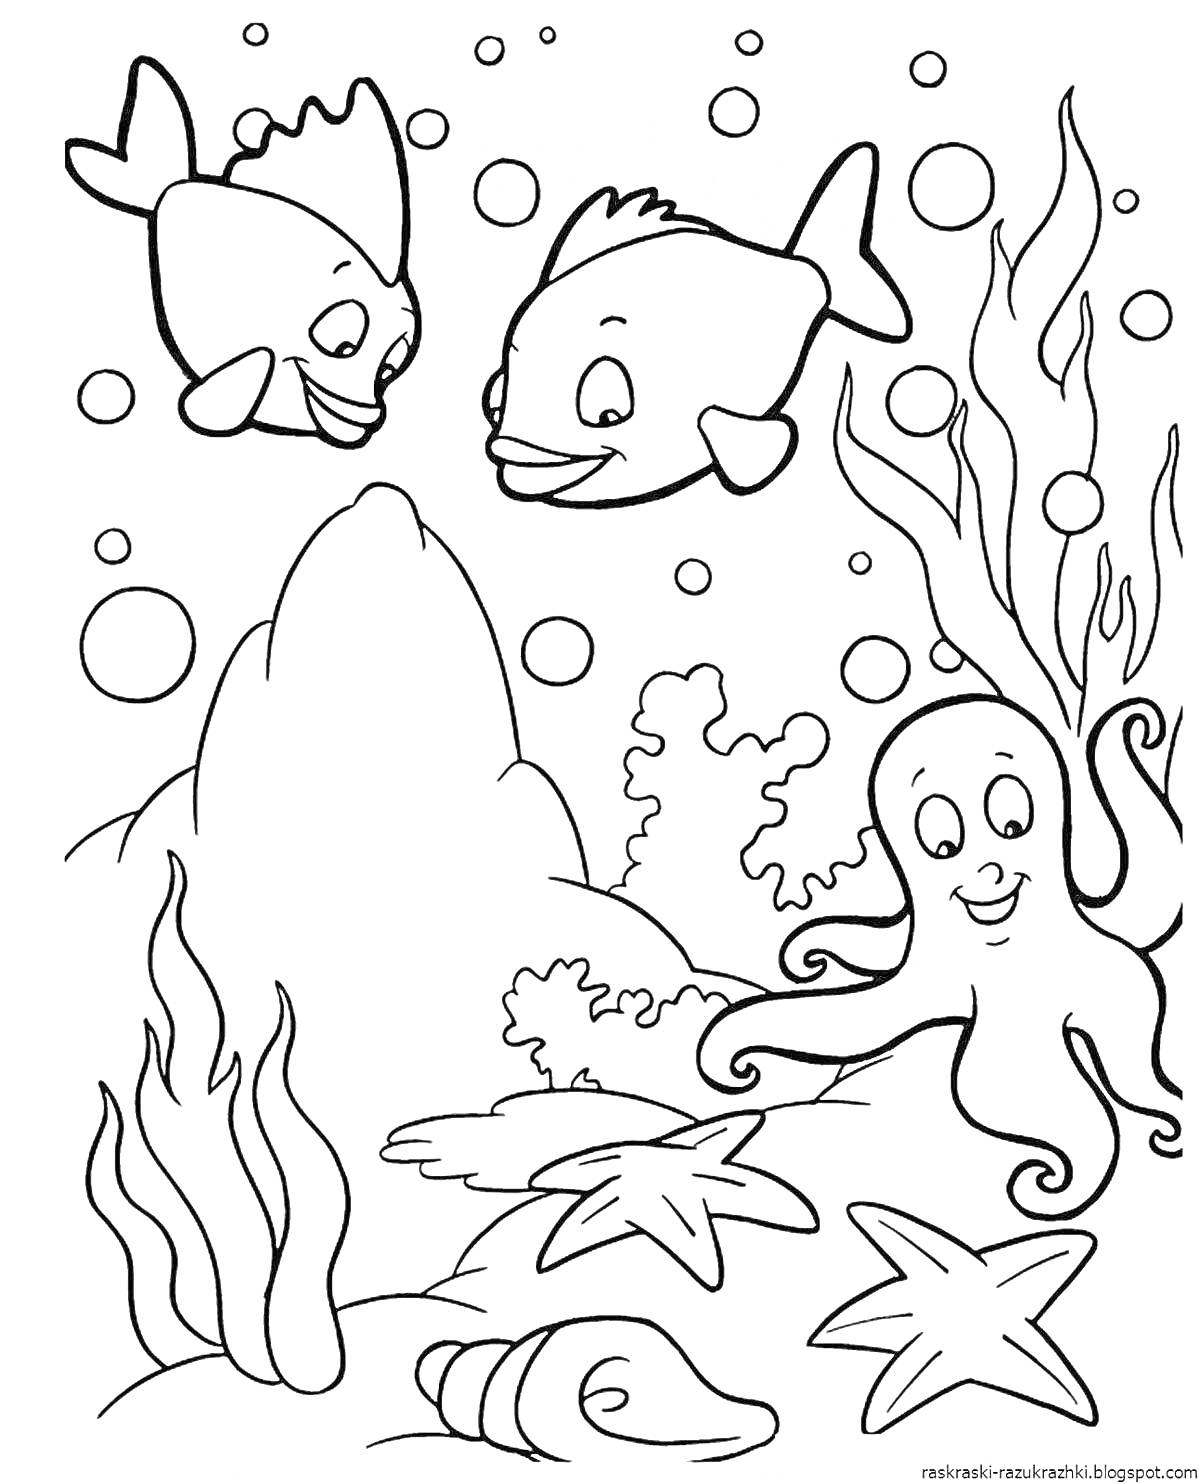 На раскраске изображено: Водоросли, Морские звезды, Подводный мир, Рыба, Камни, Осьминоги, Пузыри